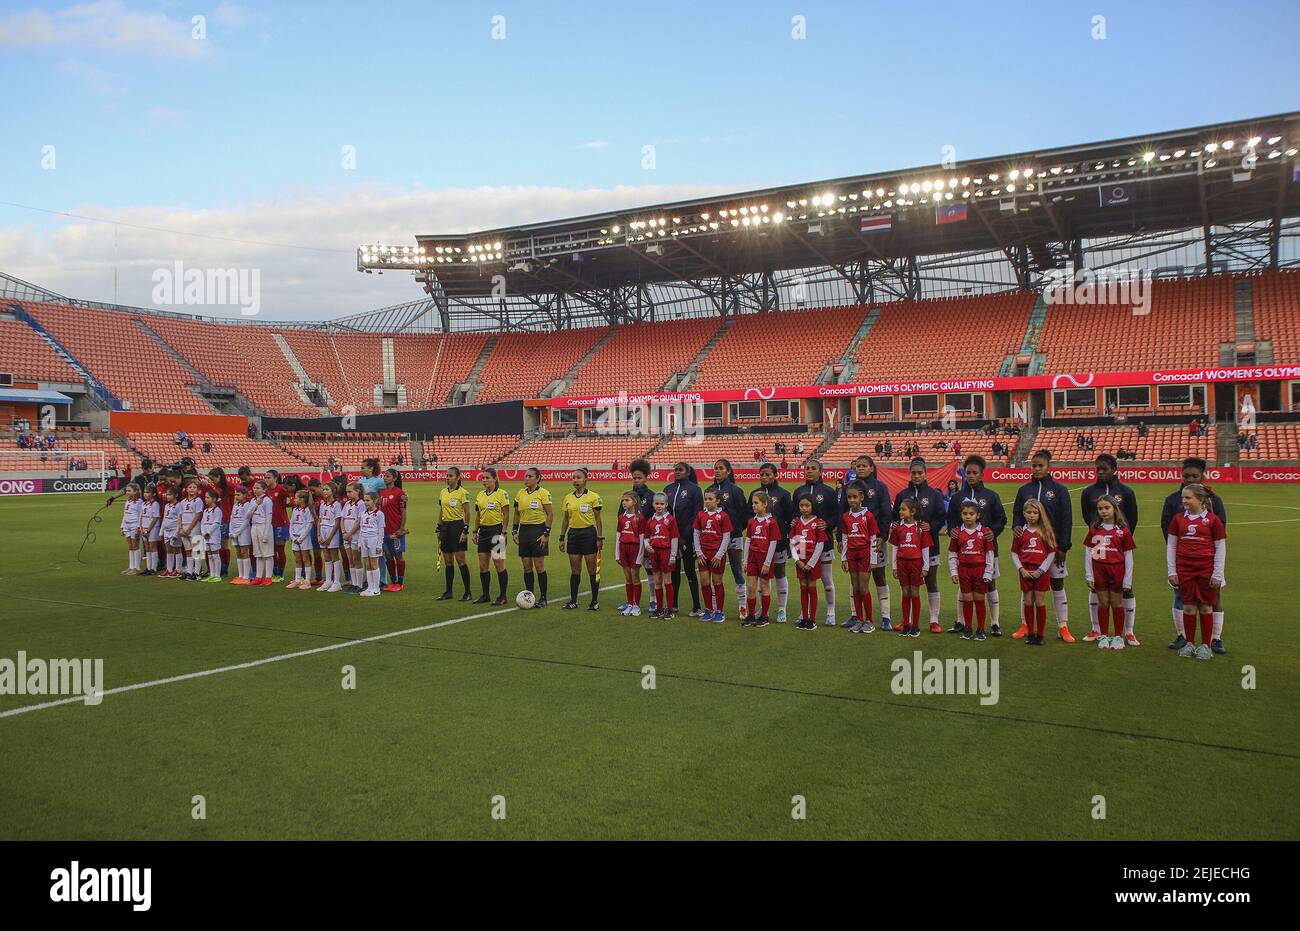 28 janvier 2020 ; Houston, Texas, États-Unis ; Le Costa Rica et le Panama se tiennent pour les hymnes pendant la qualification olympique des femmes du CONCACAF au stade BBVA. Crédit obligatoire: Thomas Shea-USA TODAY Sports/Sipa USA Banque D'Images